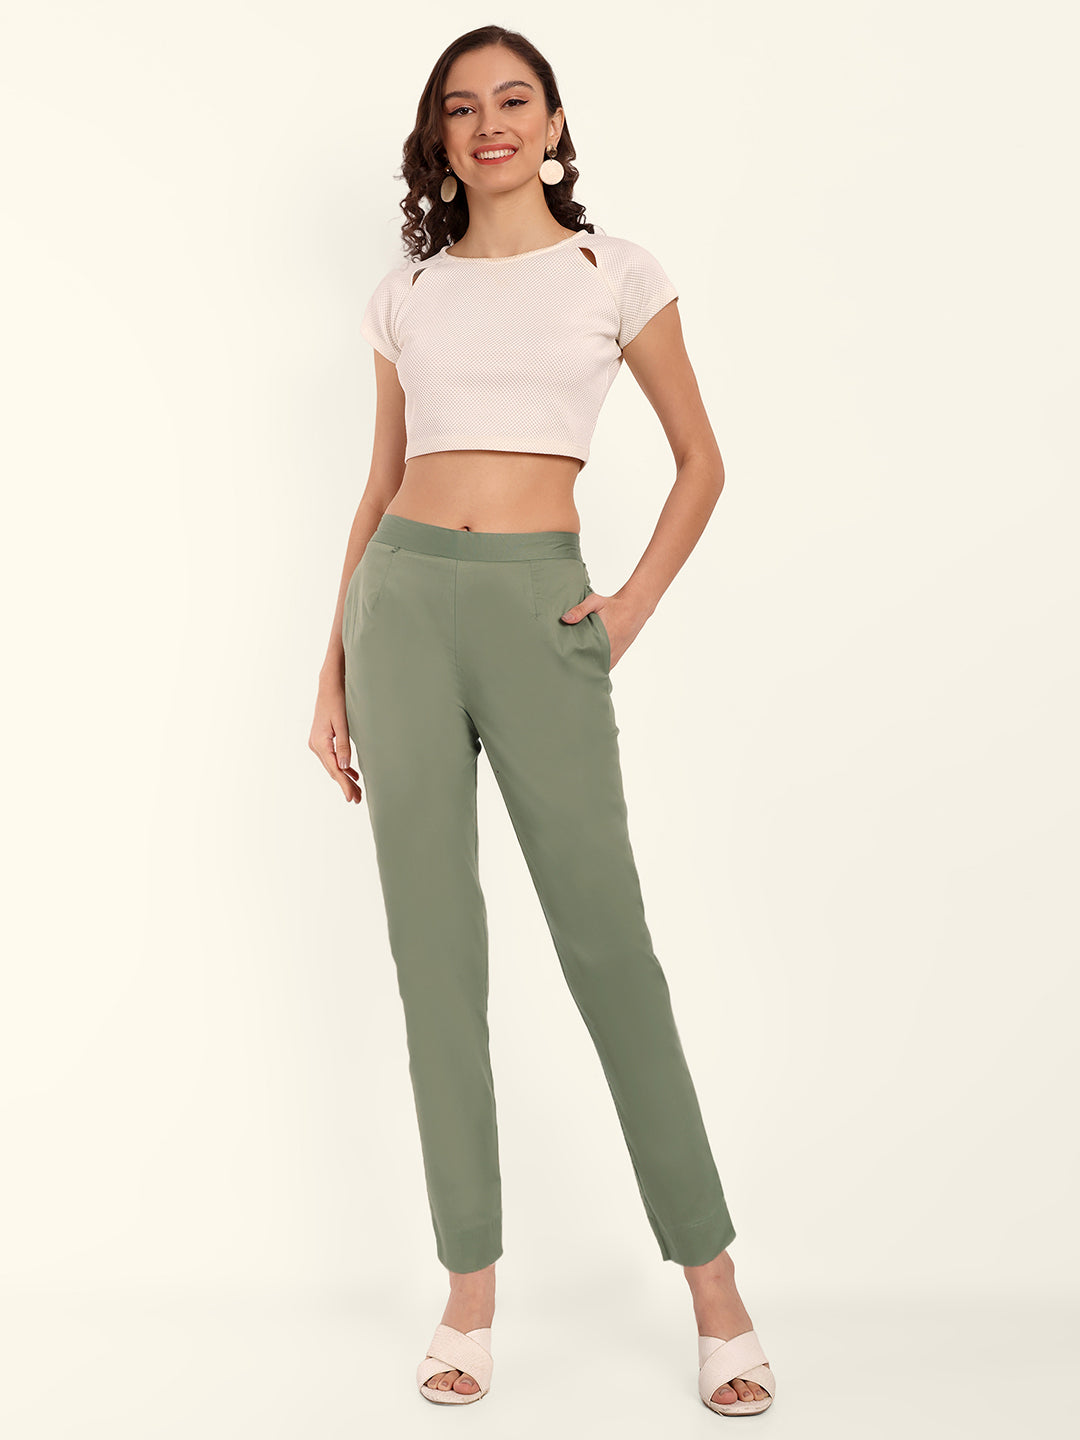 Alexandra Stretchable Cotton Women Trousers  Pants GirlsLadiesWomenOnlineSeasonswaycom   Discounted RatesFree Shipping30 Days Return